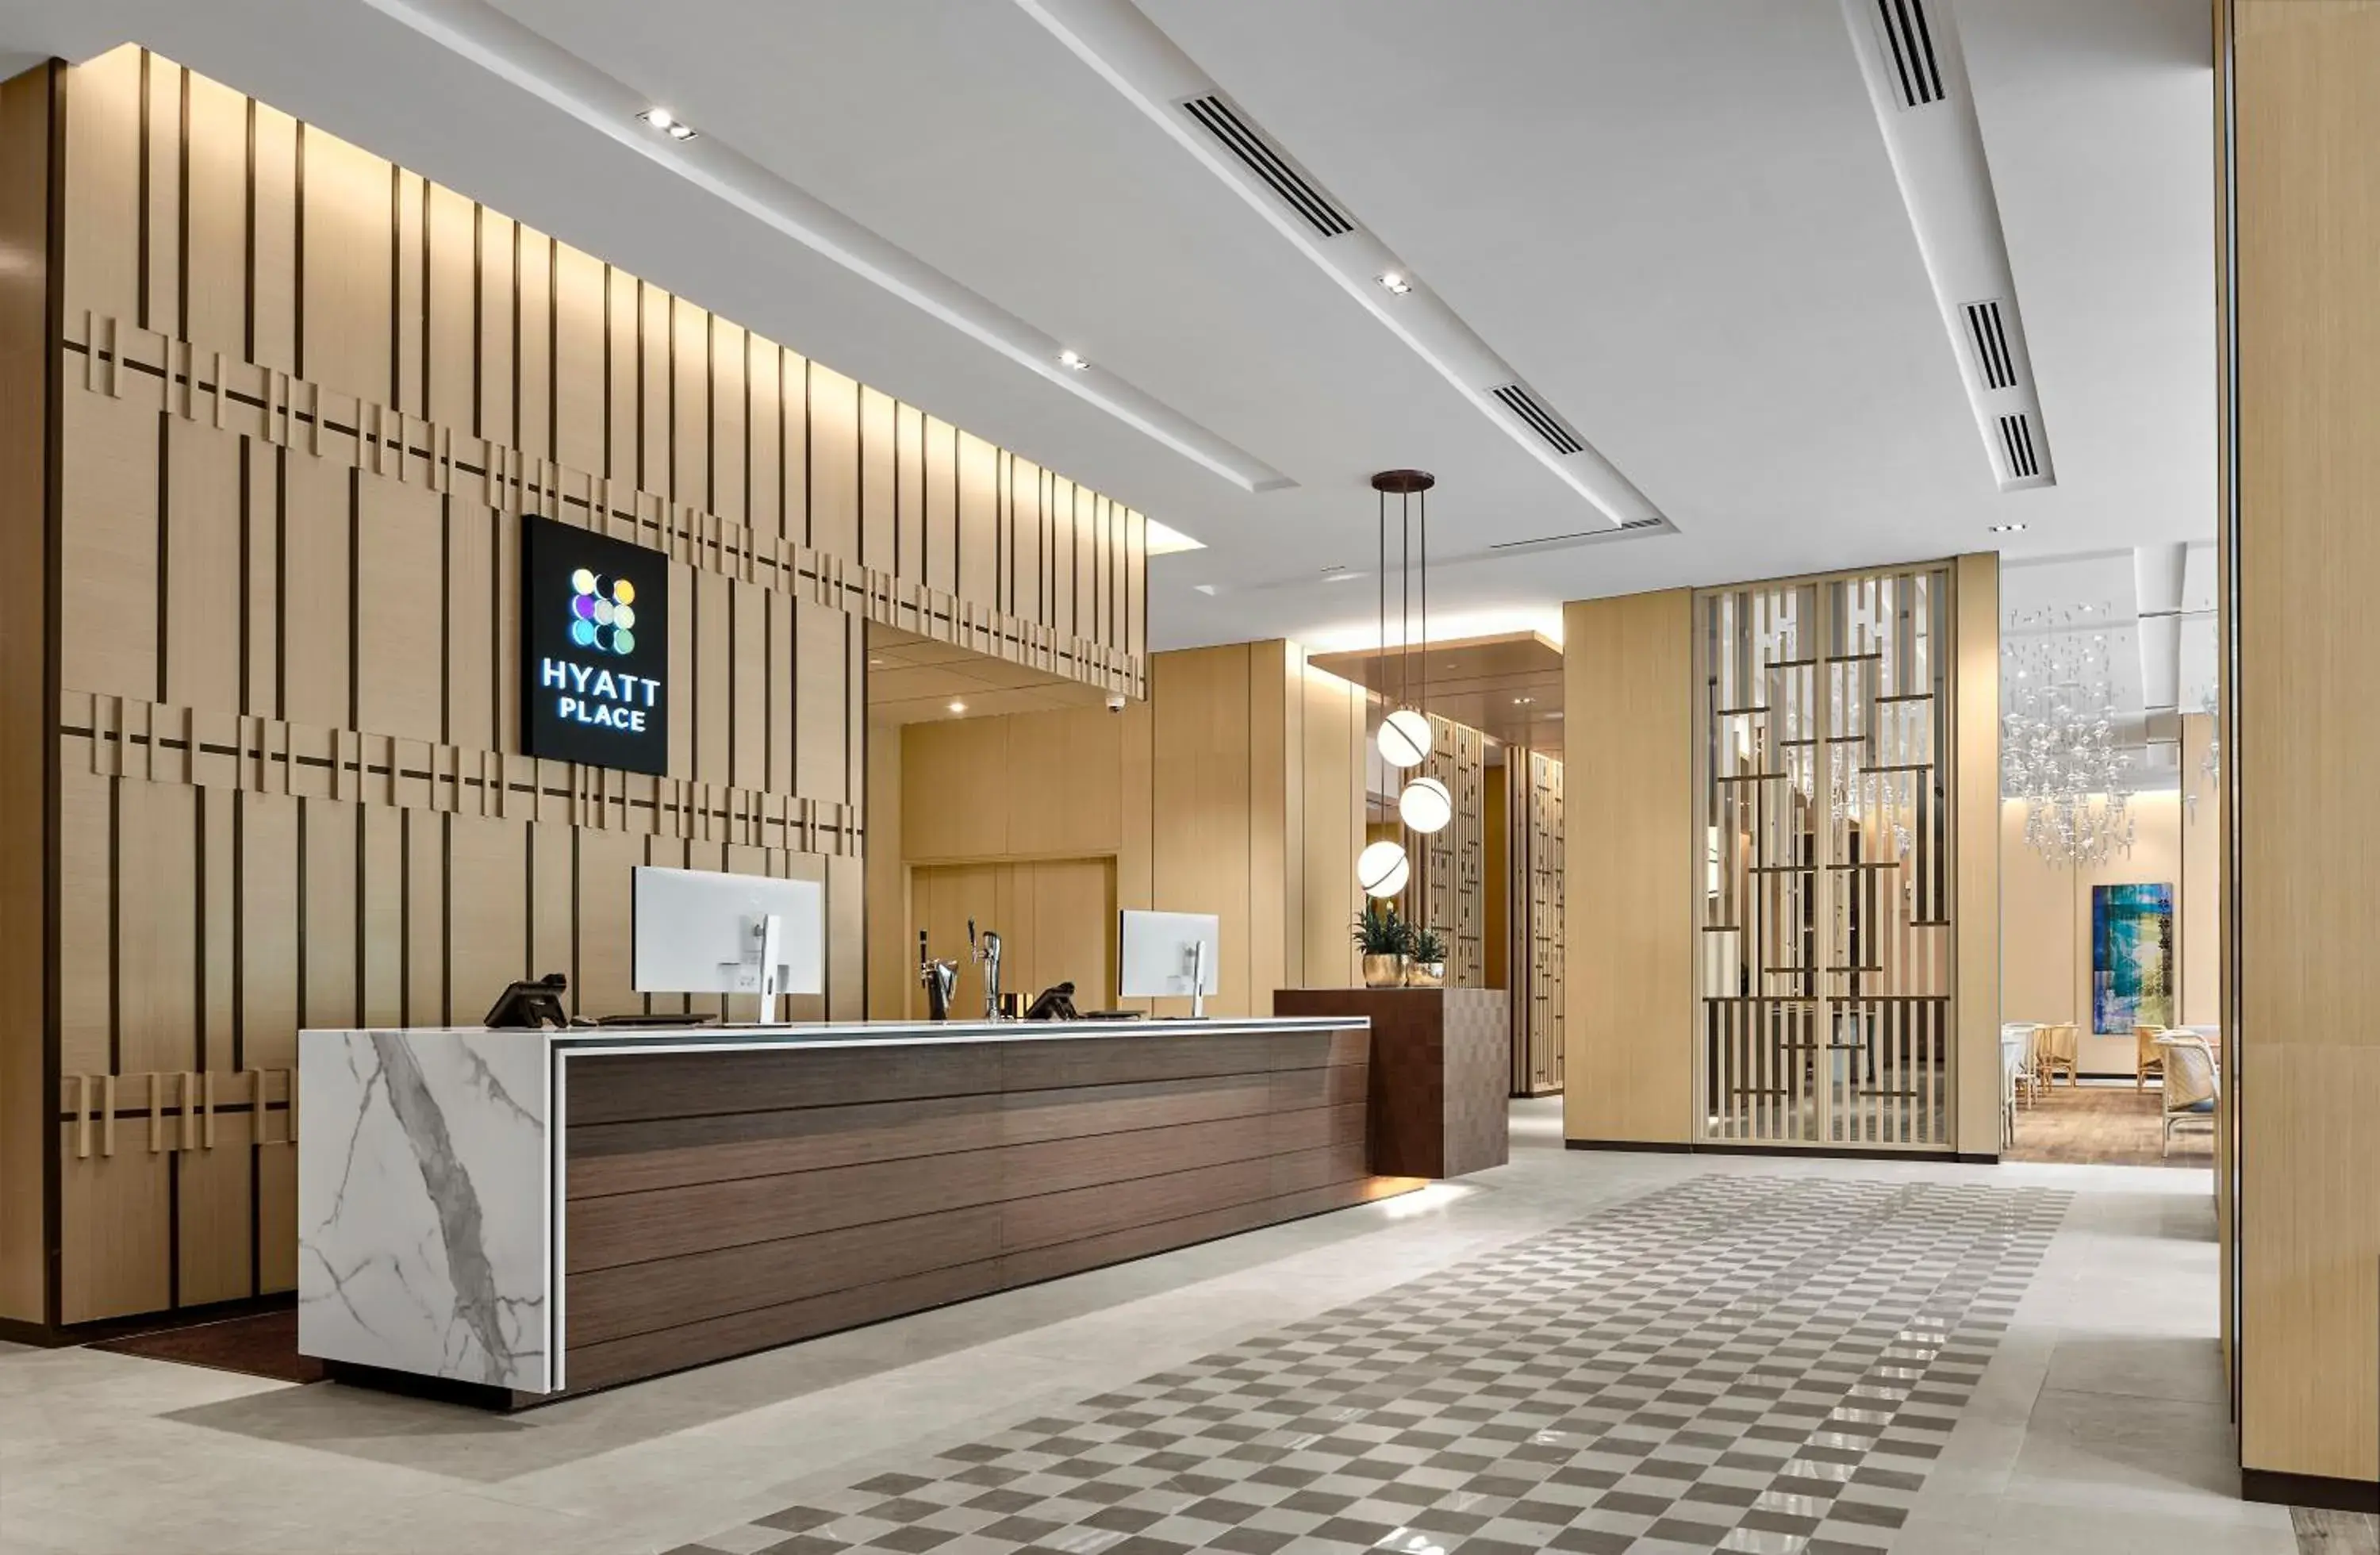 Property building, Lobby/Reception in Hyatt Place Johor Bahru Paradigm Mall